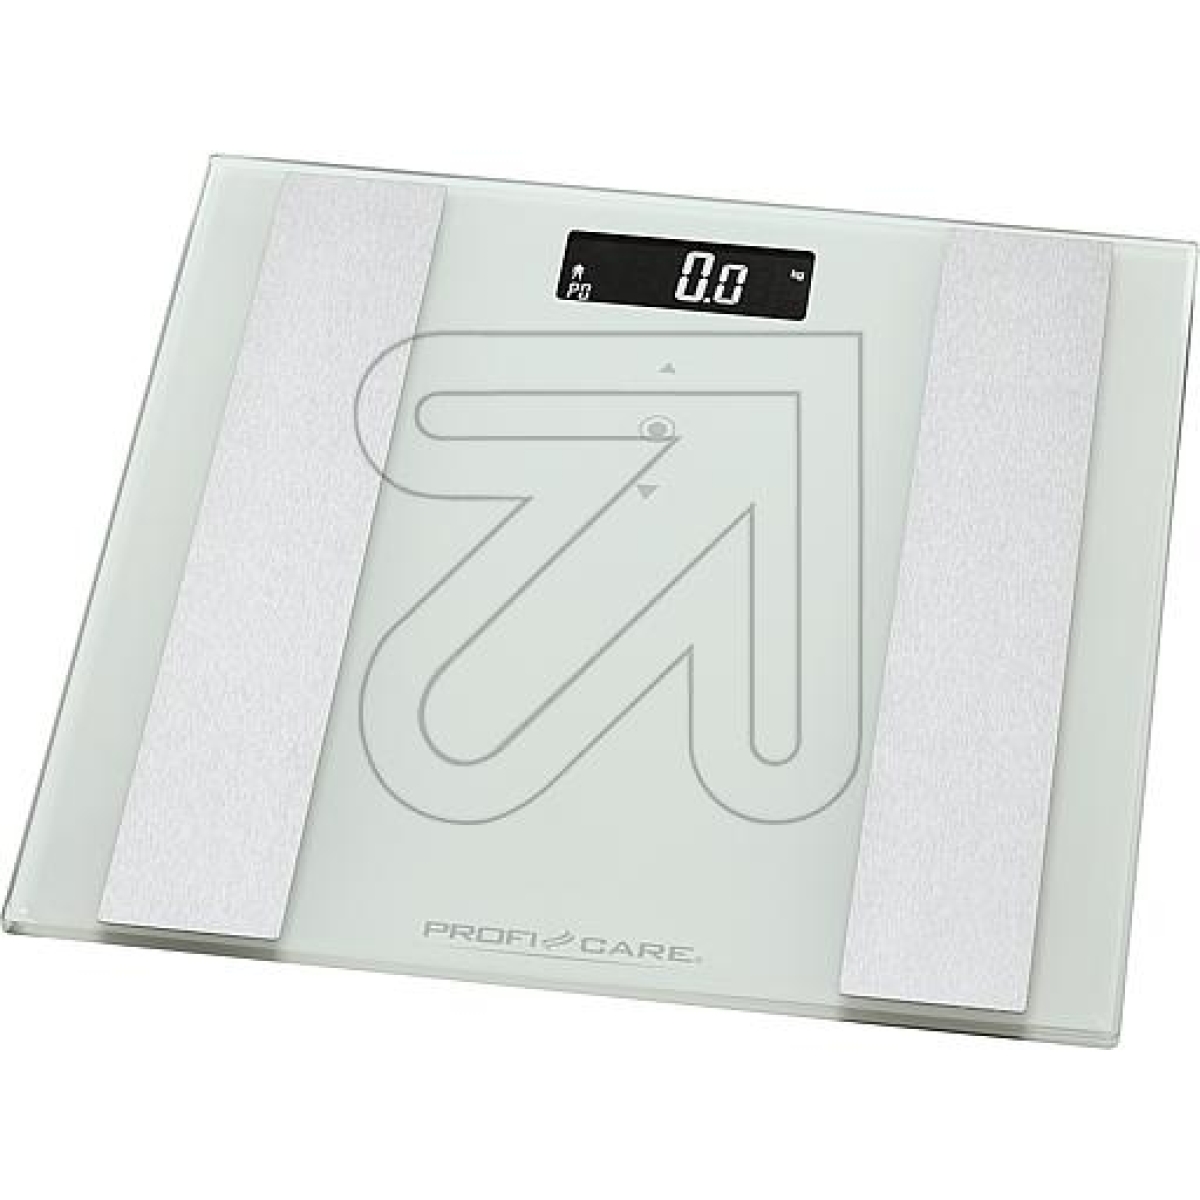 Profi CareGlass analysis scales white PC-PW 3007 ProfiCareArticle-No: 434845